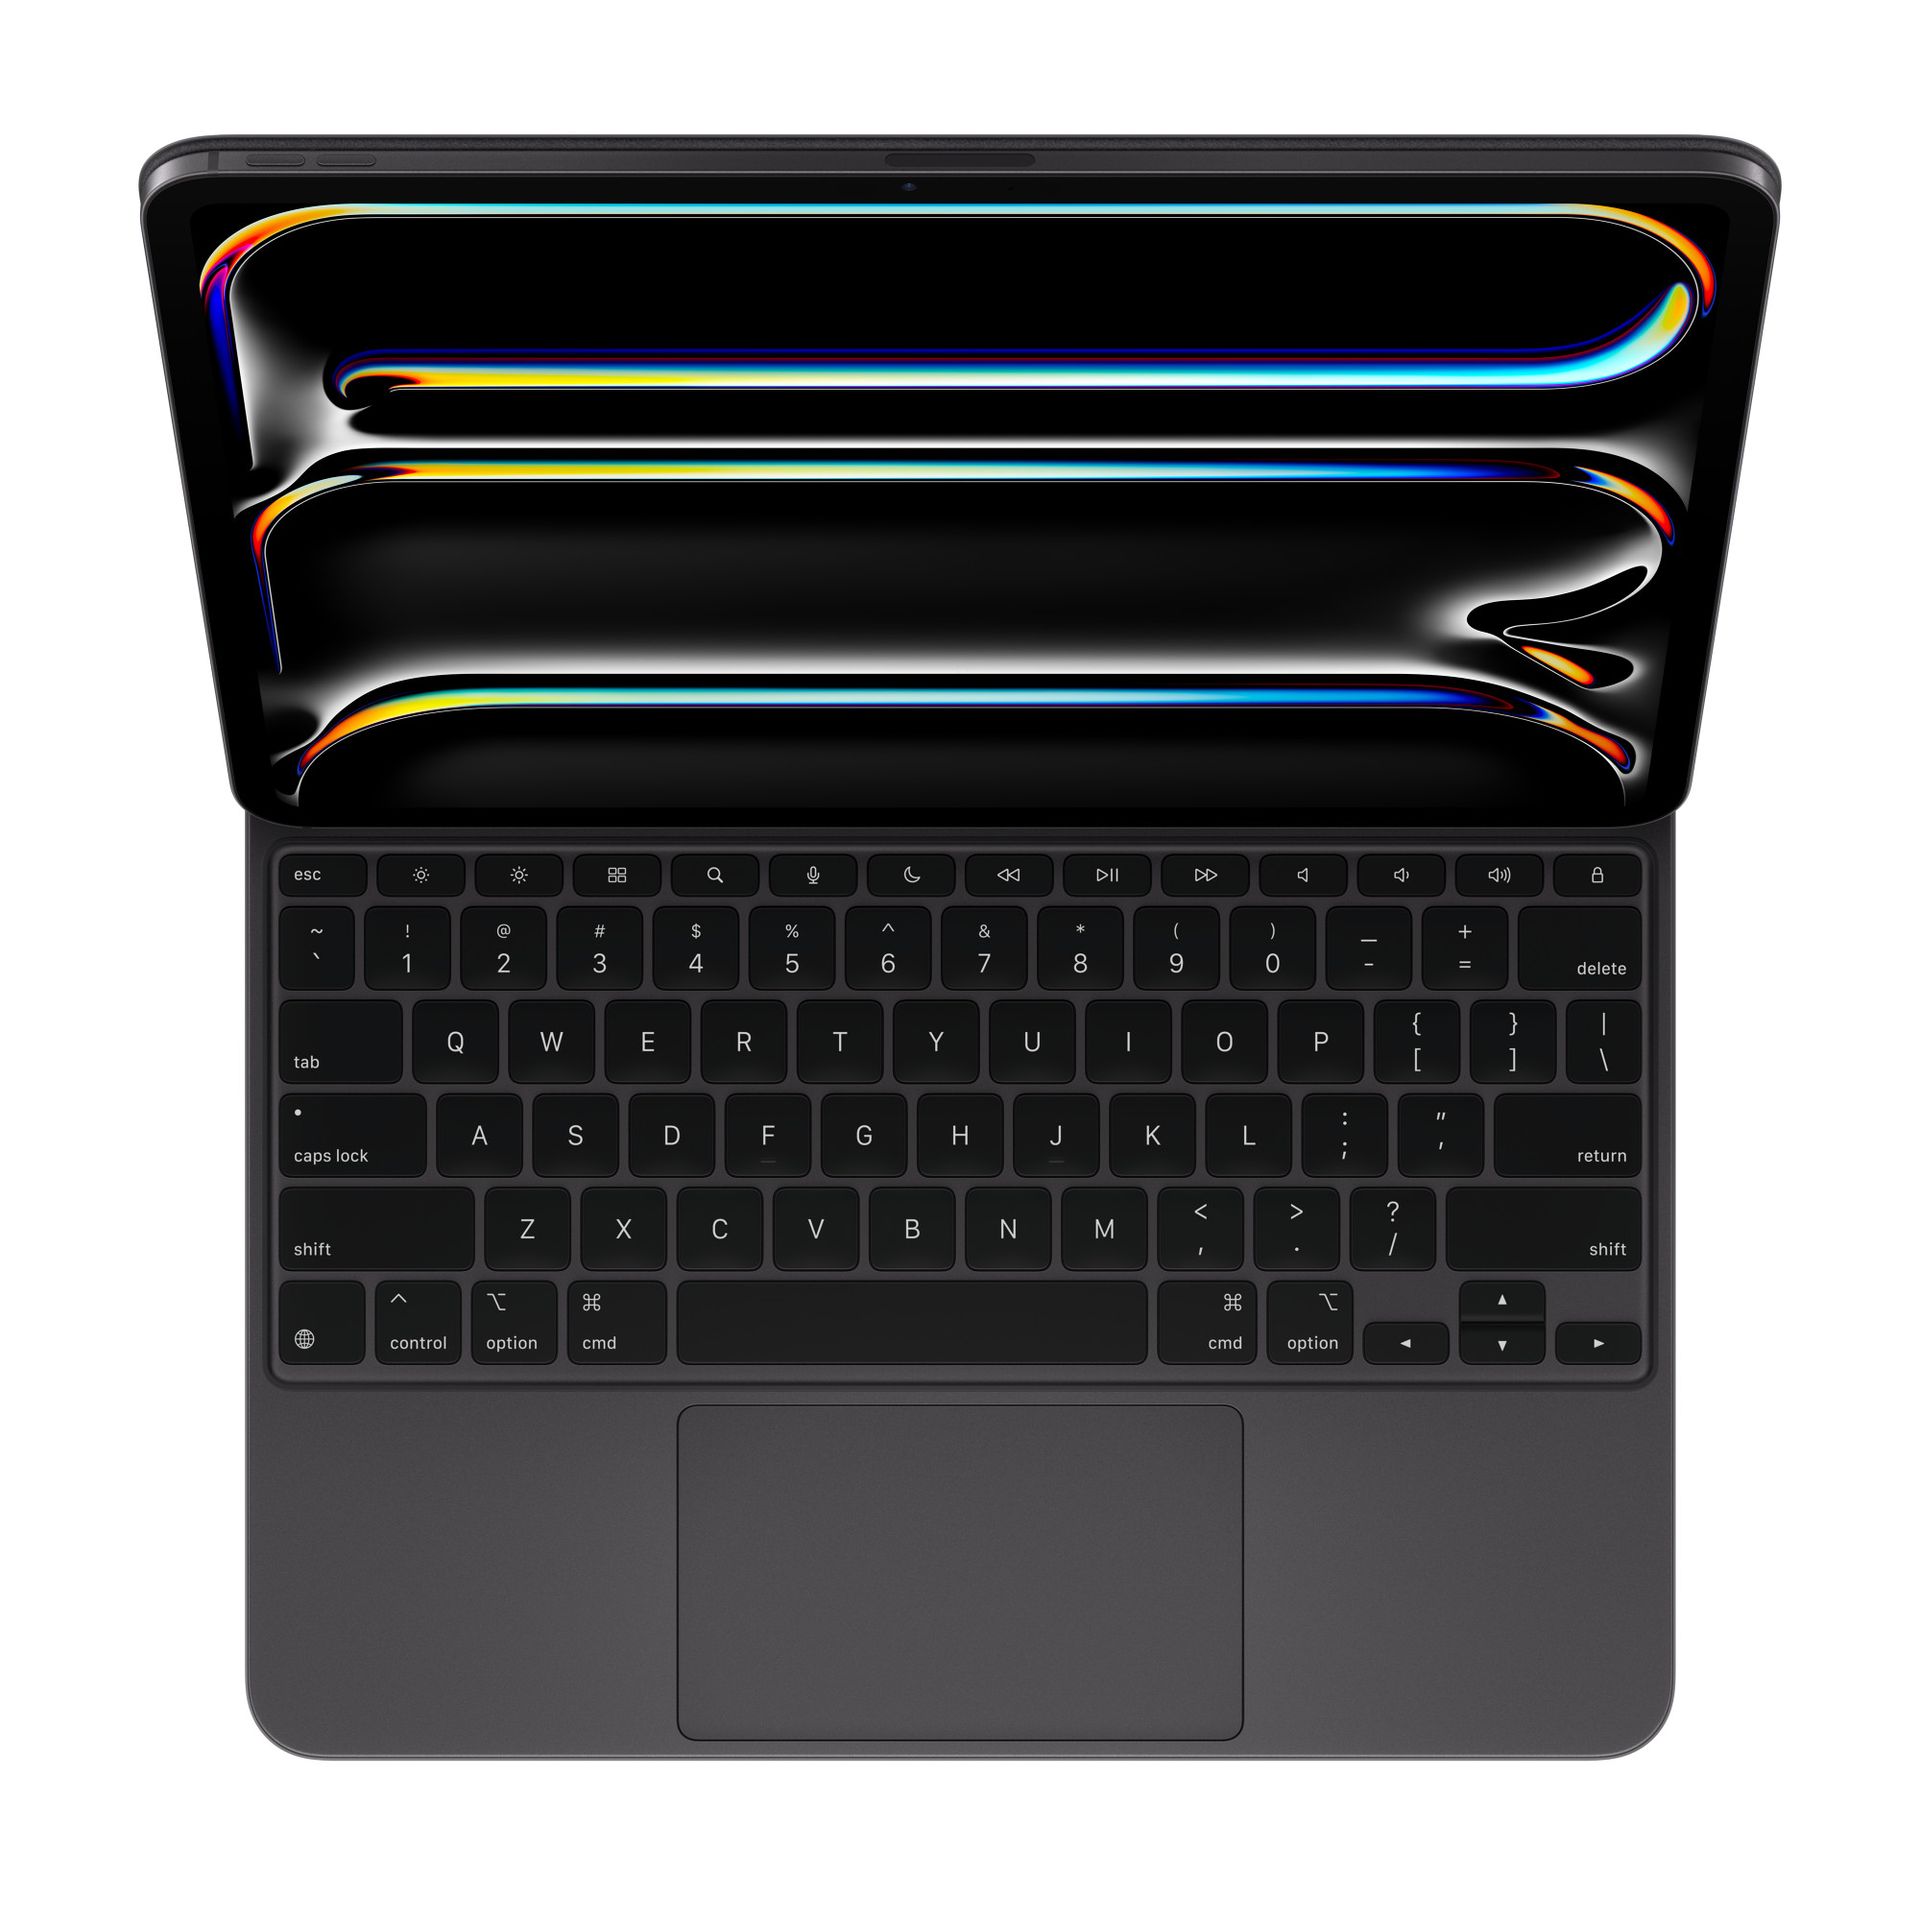 Preise für Apple Pencil Pro und Magic Keyboard und mehr